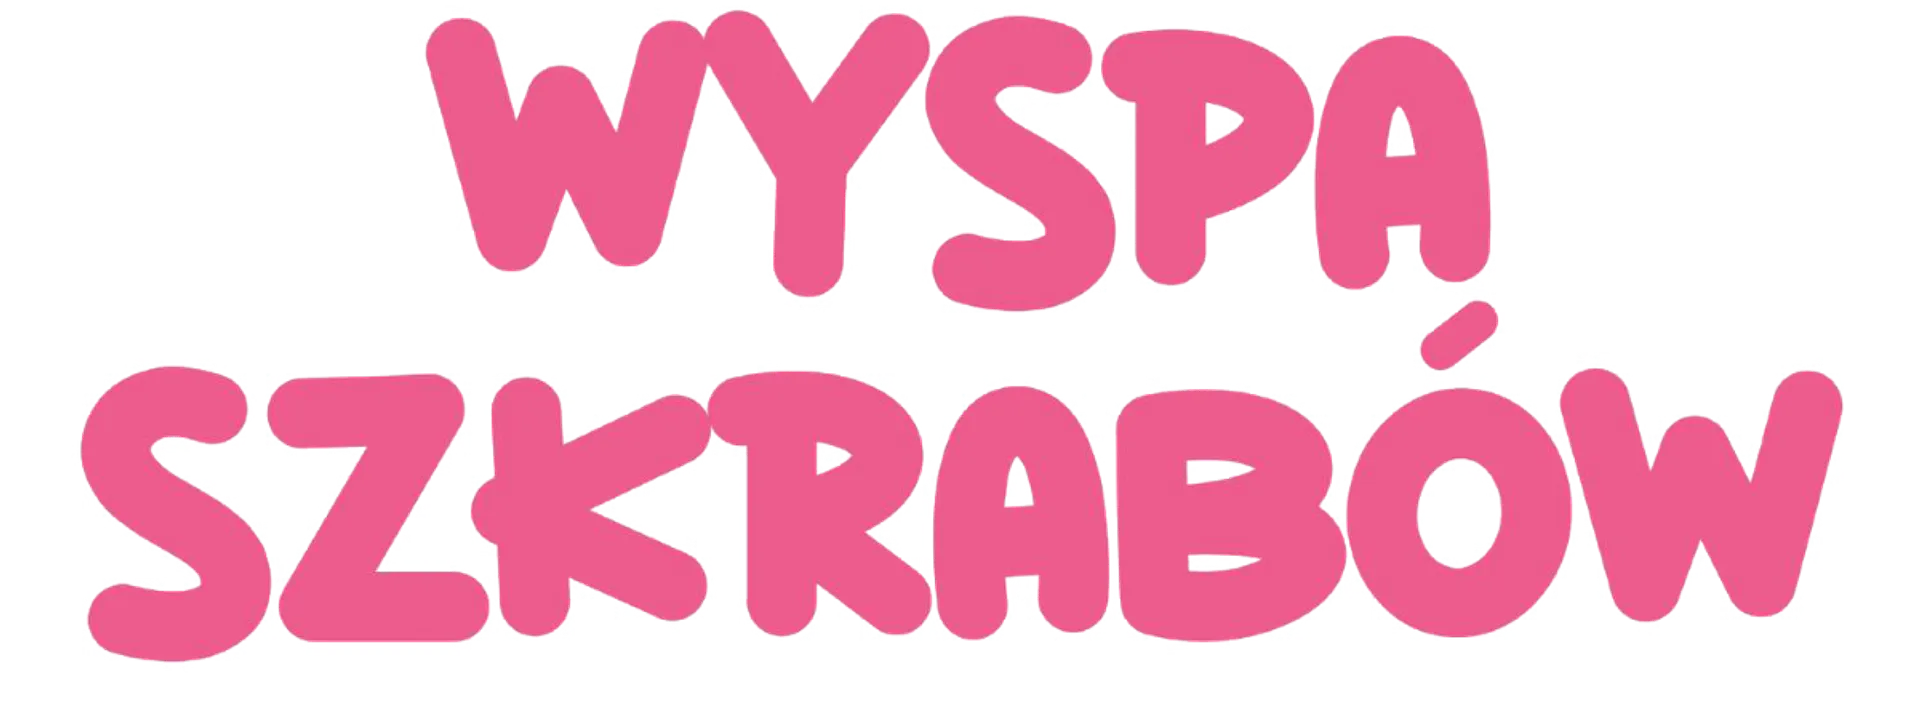 WYSPA SZKRABÓW logo